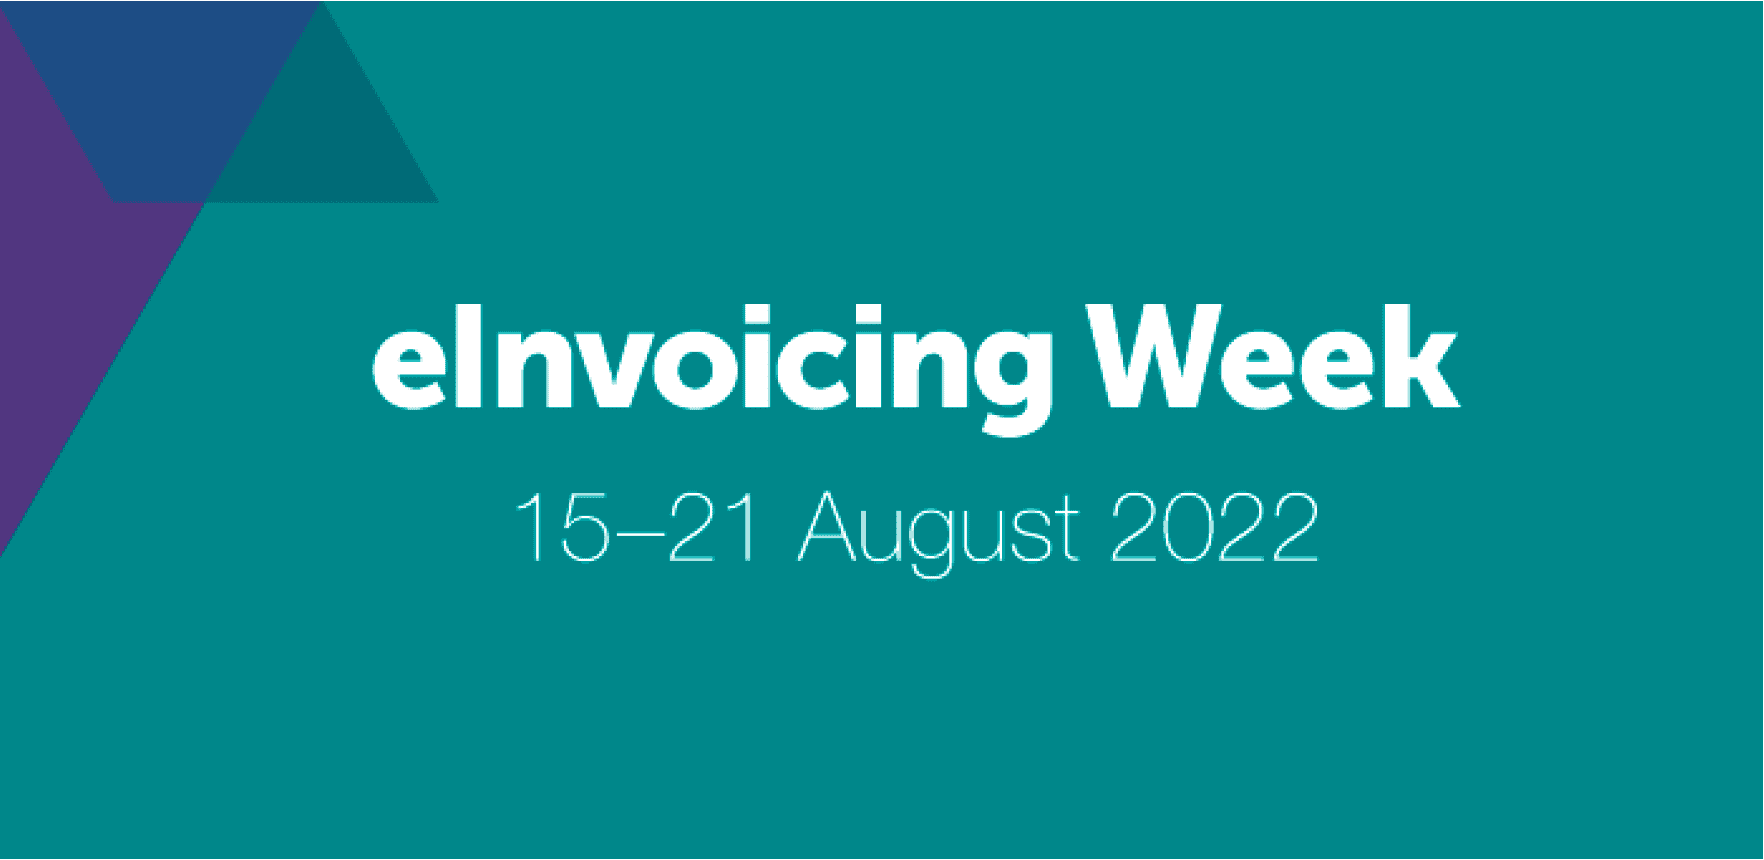 eInvoicing Week 2022